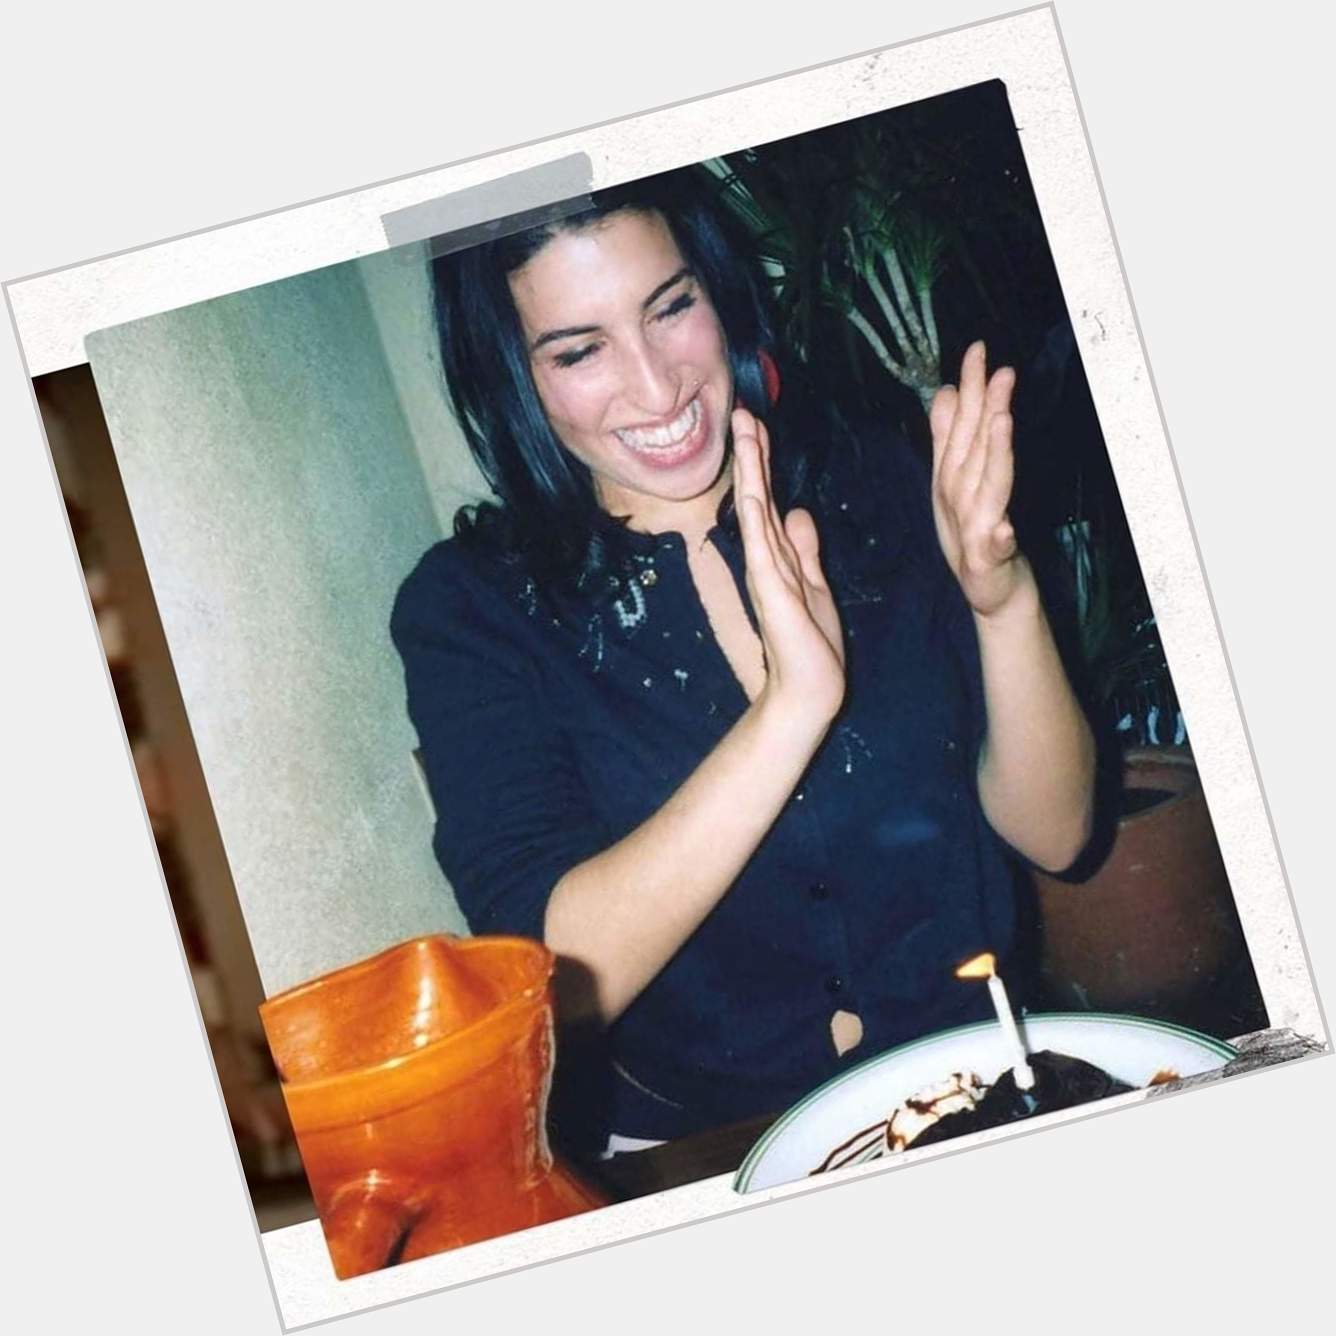 Hoy cumpliría 37 años Amy Winehouse.
Happy Birthday! 